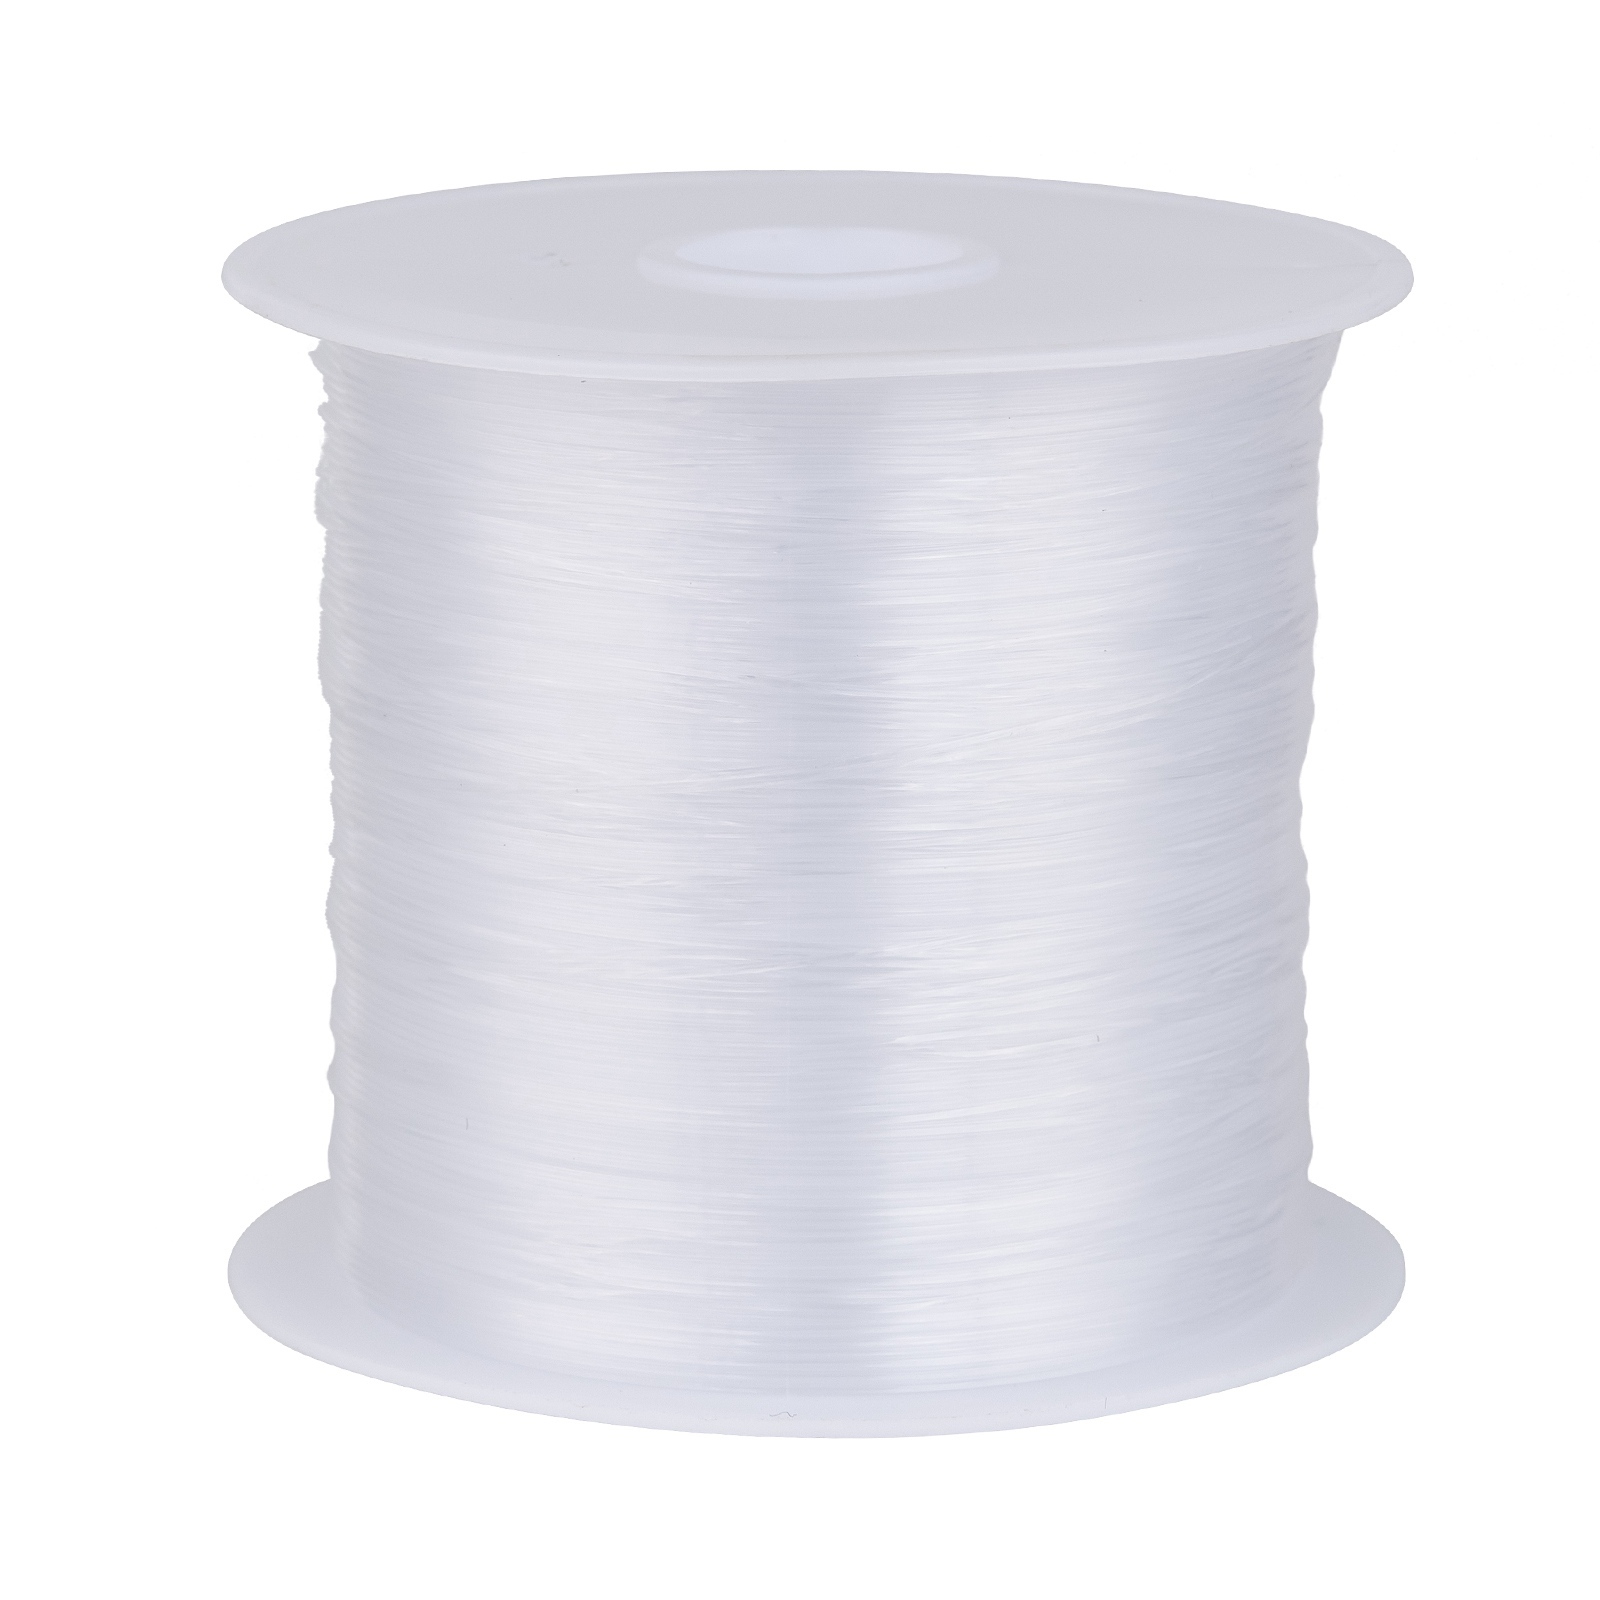 1 rouleau de fil de pêche transparent en nylon, blanc, taille : environ 0,2  mm de diamètre, environ 130 m/rouleau.